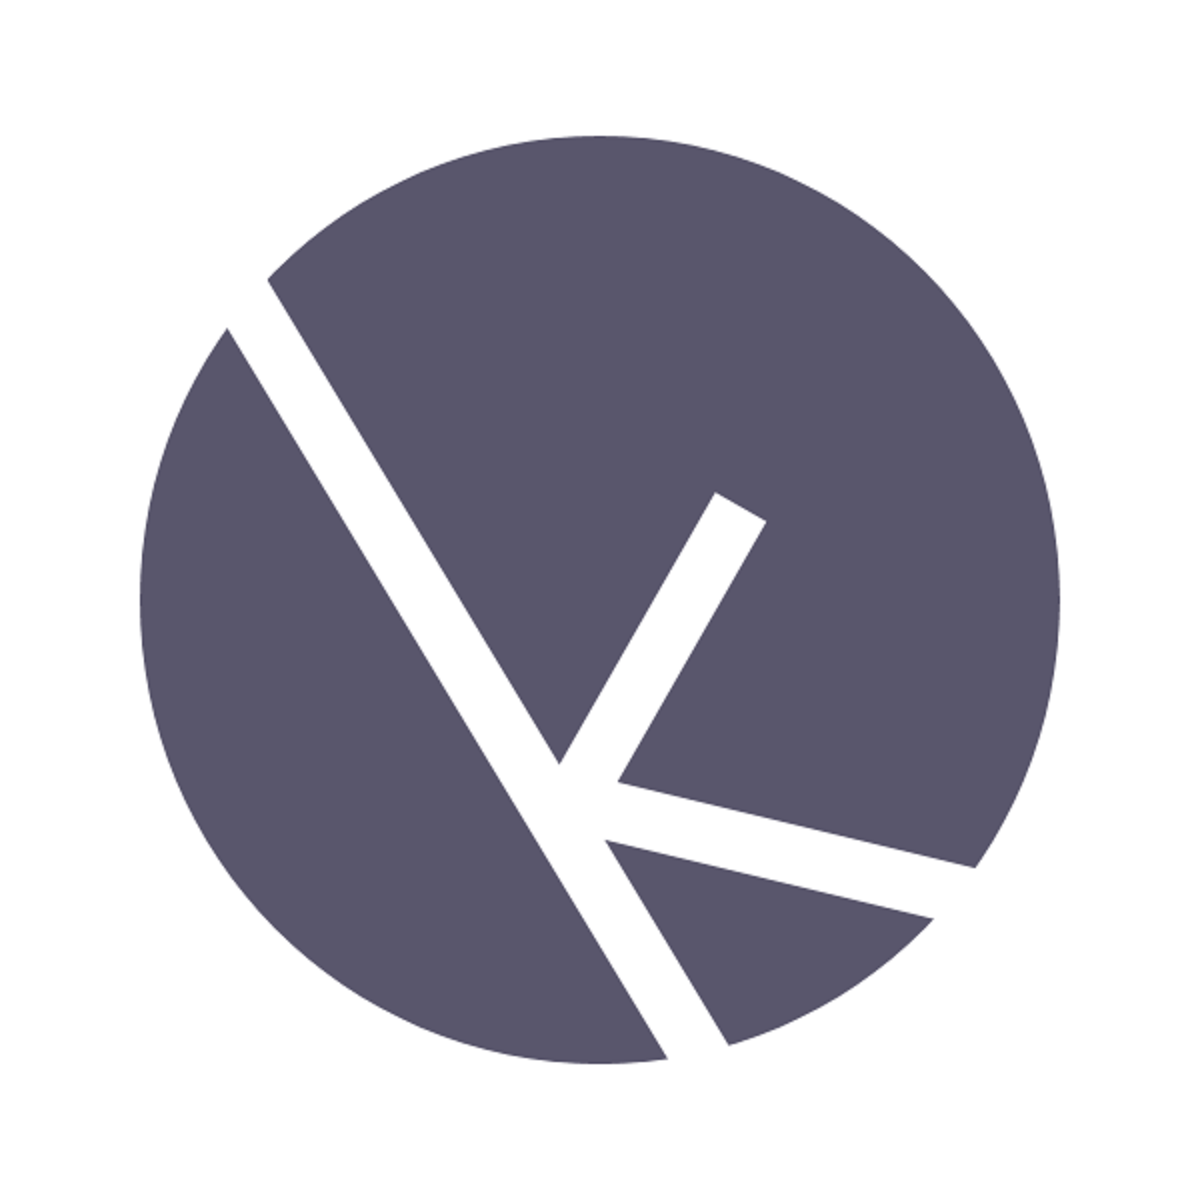 Komfortkasse offline payments for Shopify